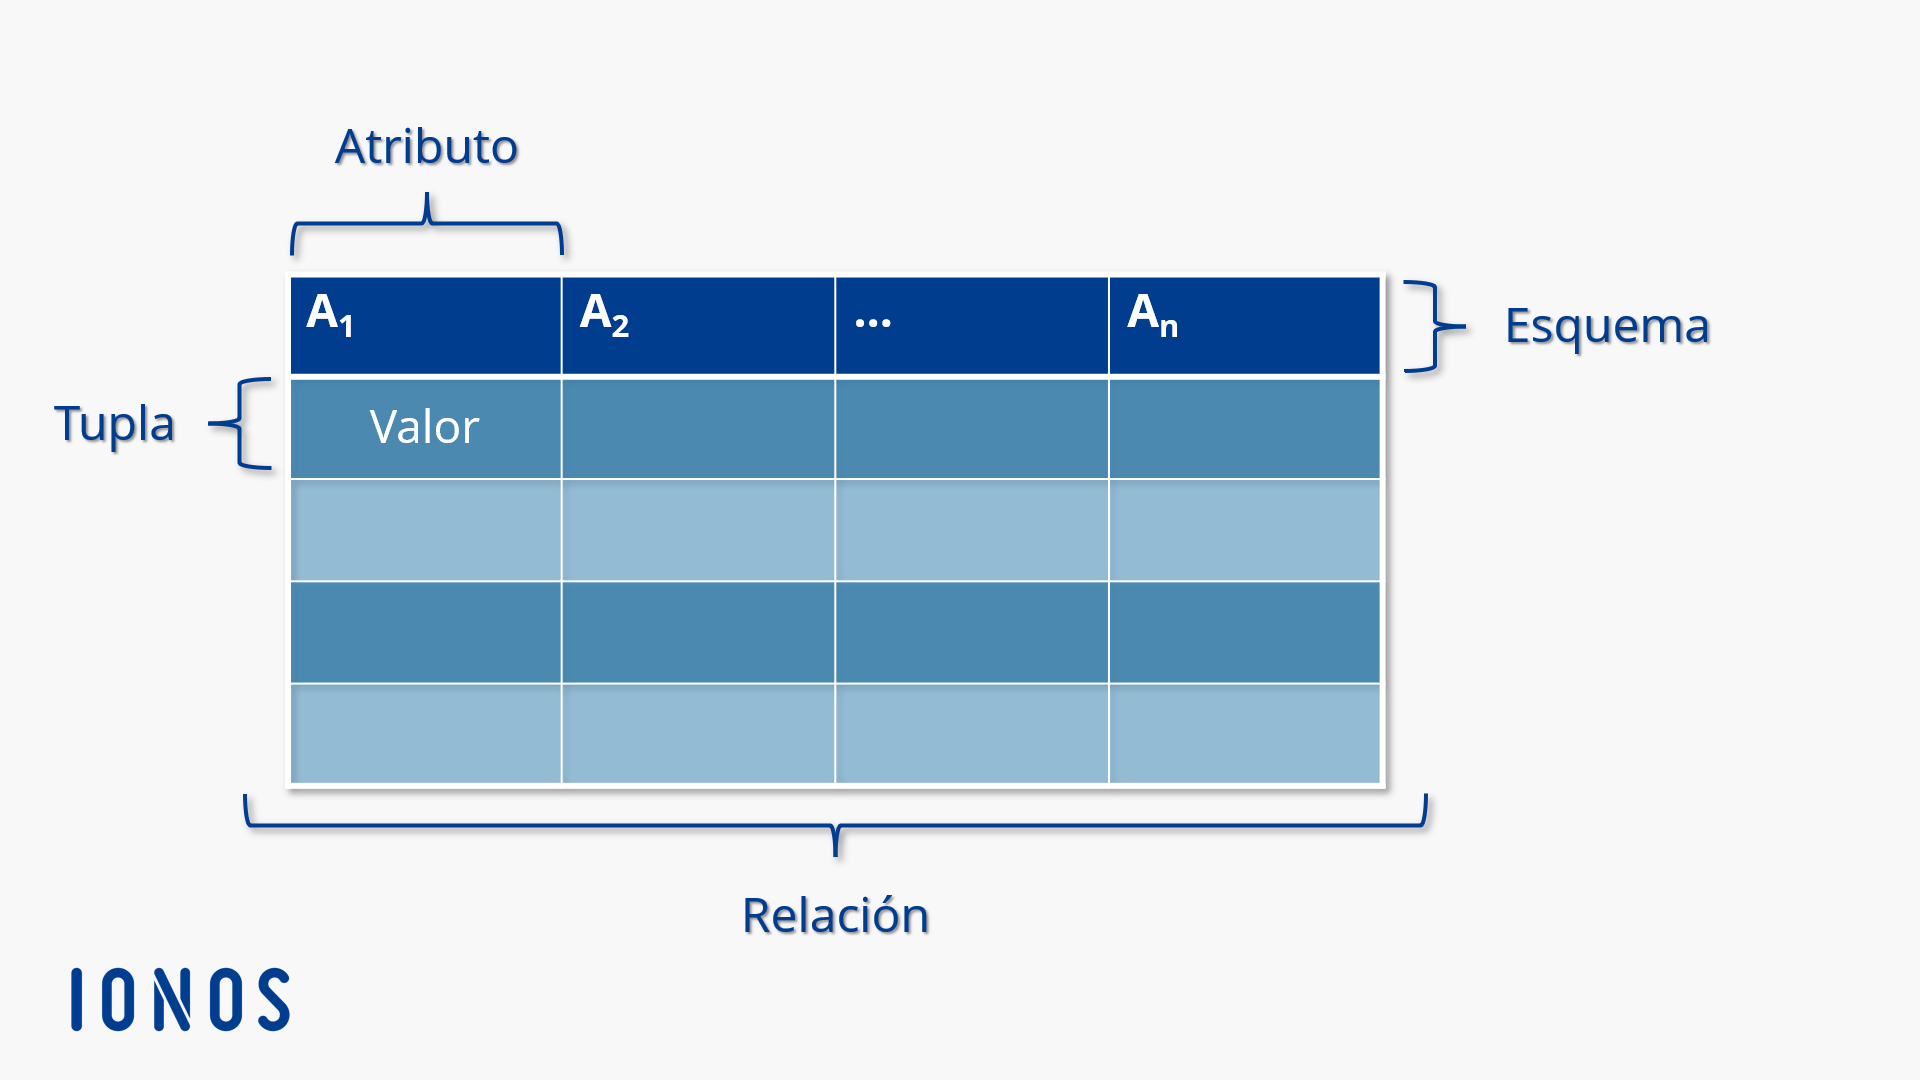 Representación gráfica de una relación según el modelo relacional